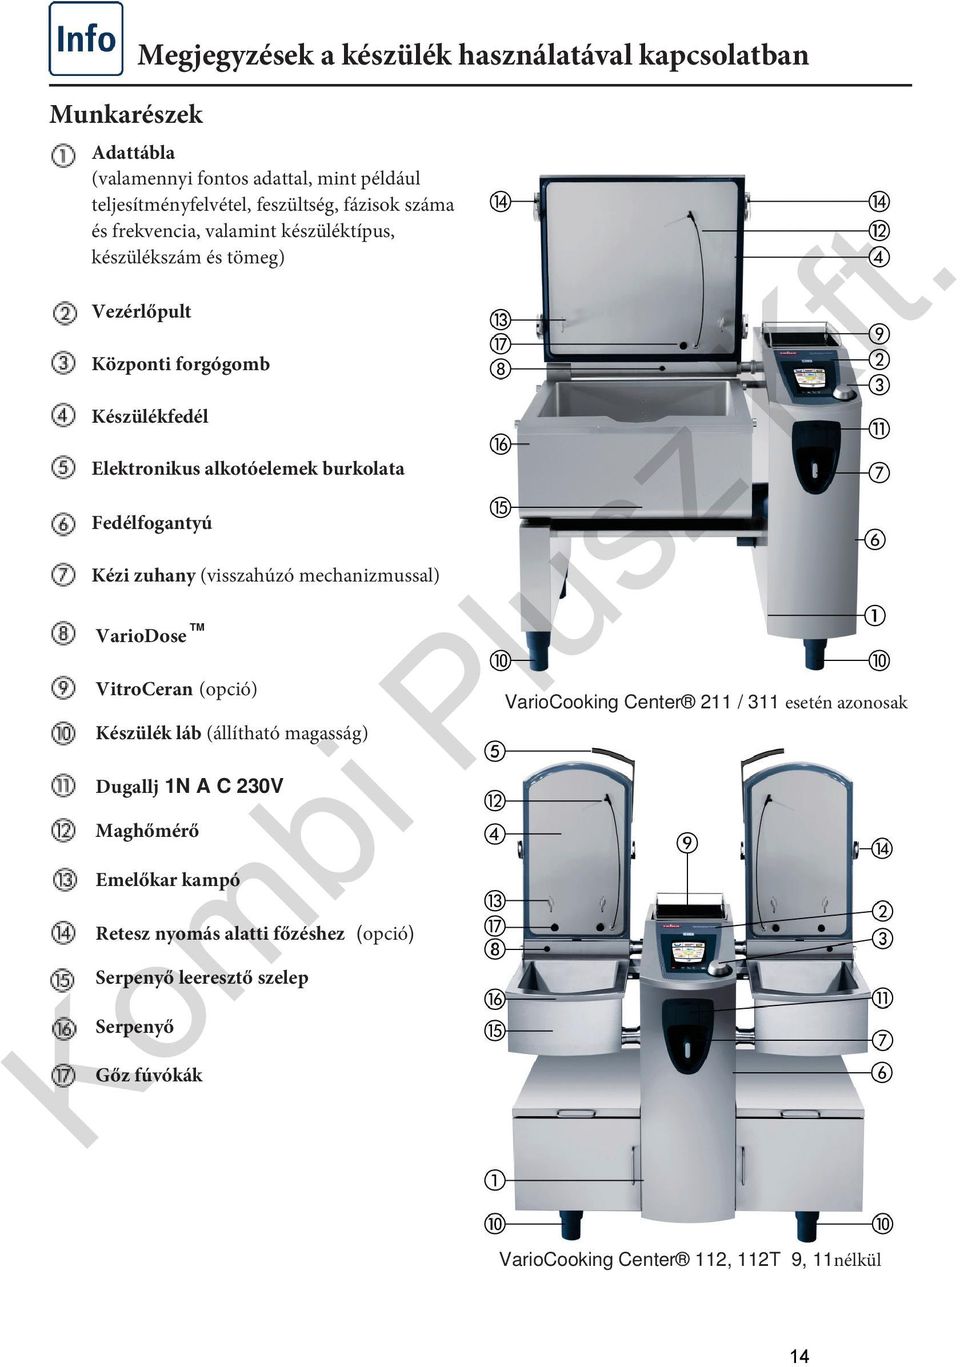 Elektronikus alkotóelemek burkolata Fedélfogantyú Kézi zuhany (visszahúzó mechanizmussal) VarioDose VitroCeran(opció) Készülék láb